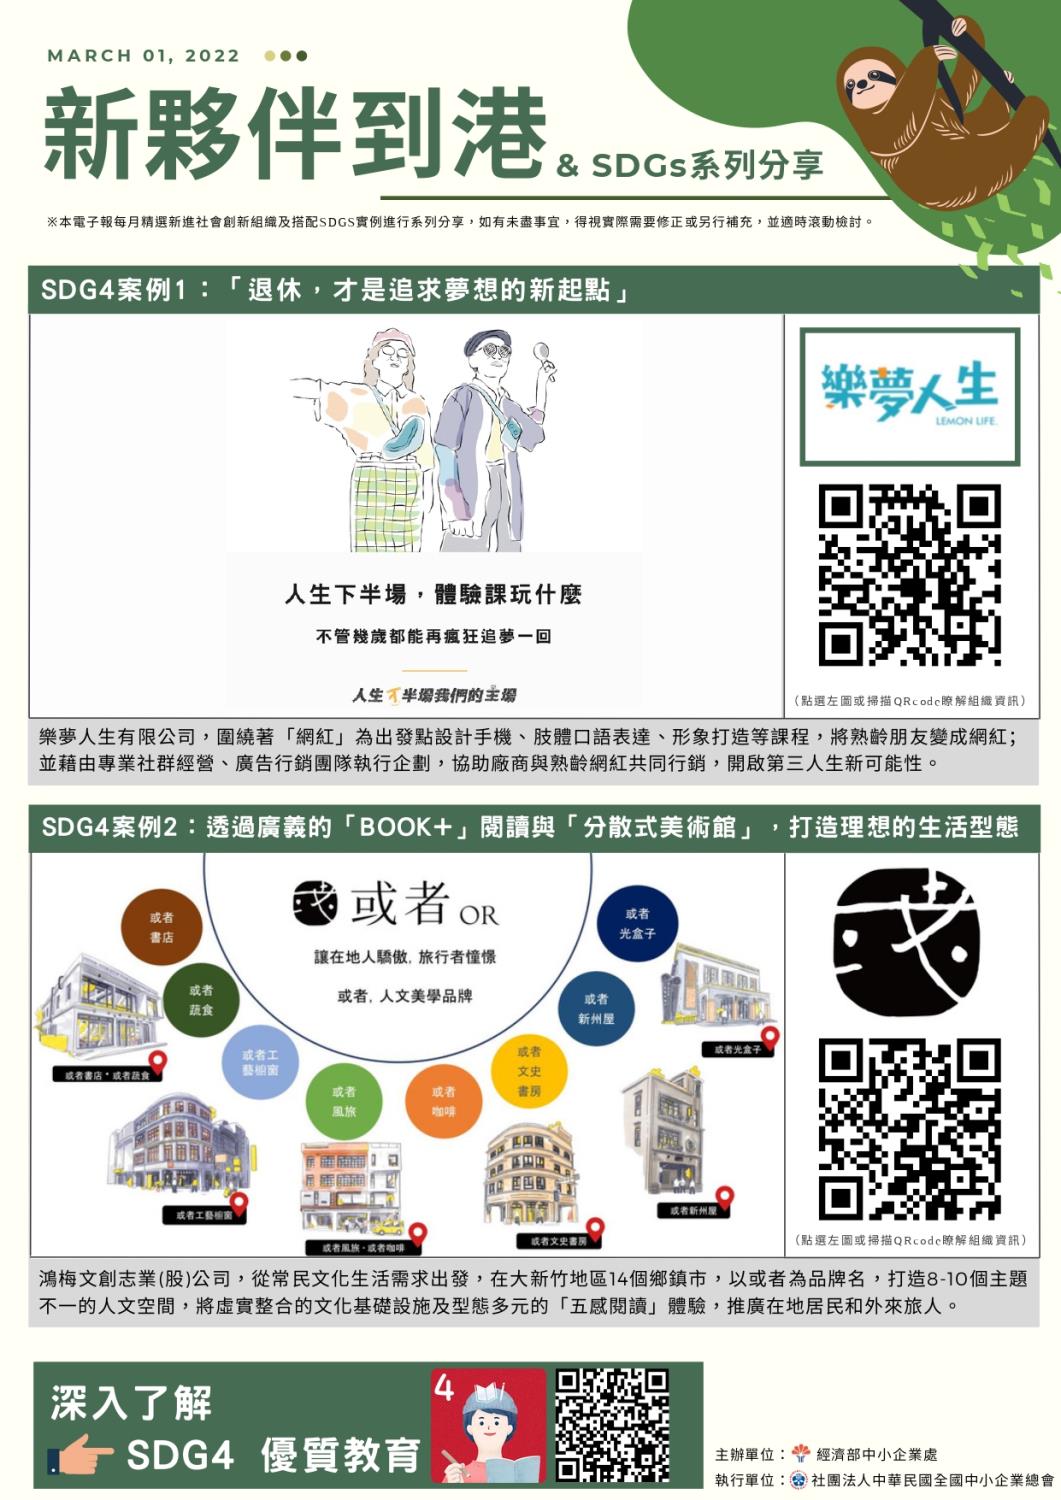 Social Economic Development Web Portal